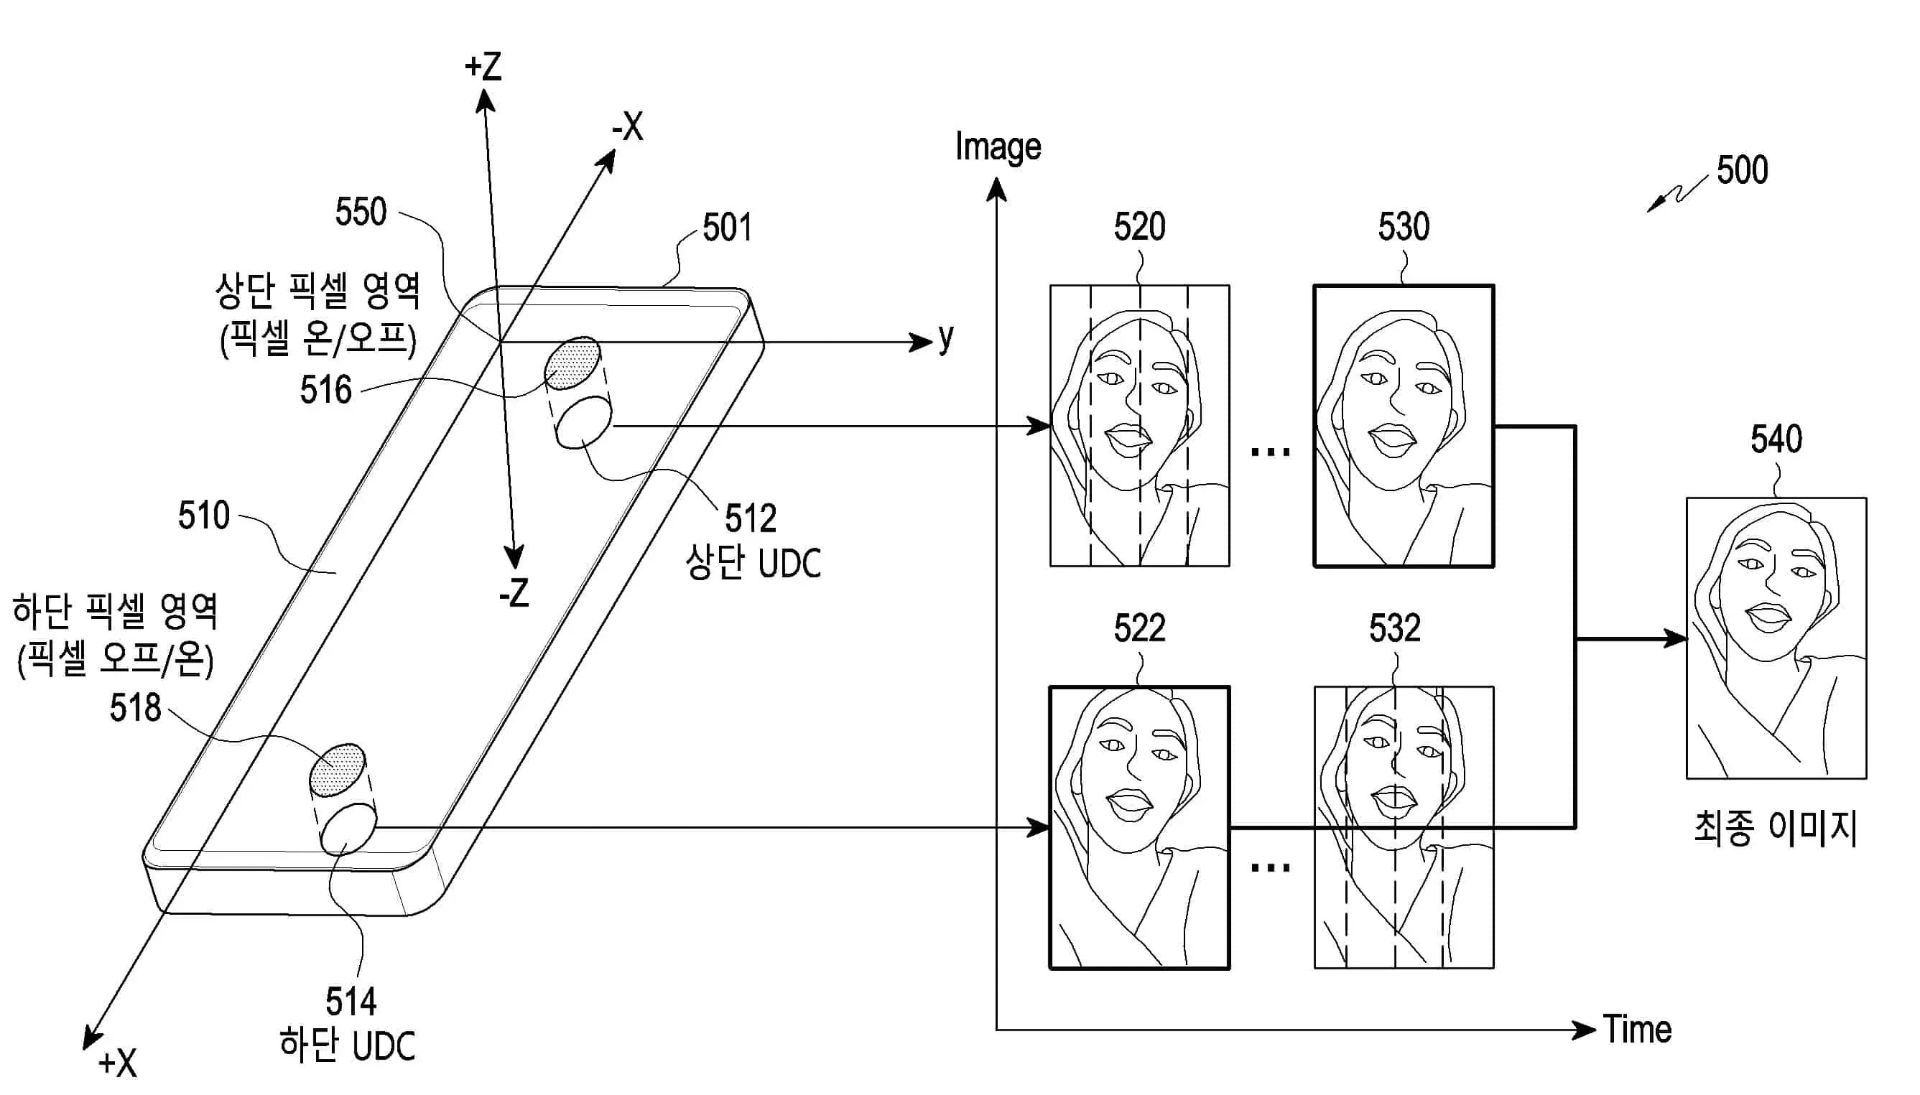 پتنت سامسونگ Samsung نحوه کارکرد تشخیص چهره با دو دوربین زیر نمایشگر تصویر